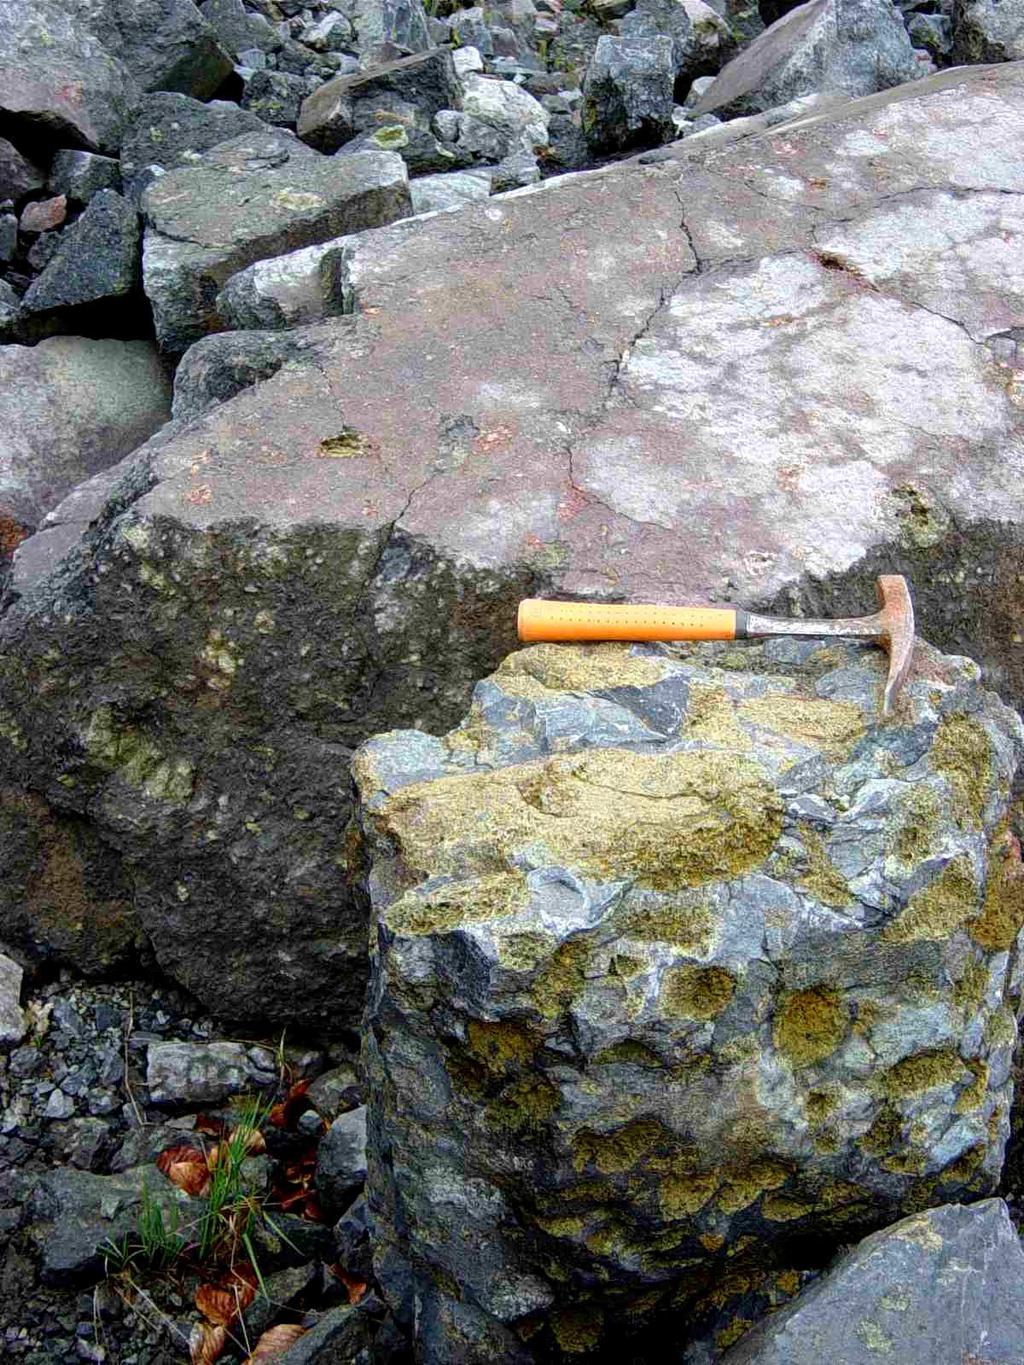 Einen wichtigen Hinweis zur Herkunft des Basaltes liefern die sogenannten Olivinknollen, die in Gonterskirchen in besonders großer Menge im Basalt zu finden sind.